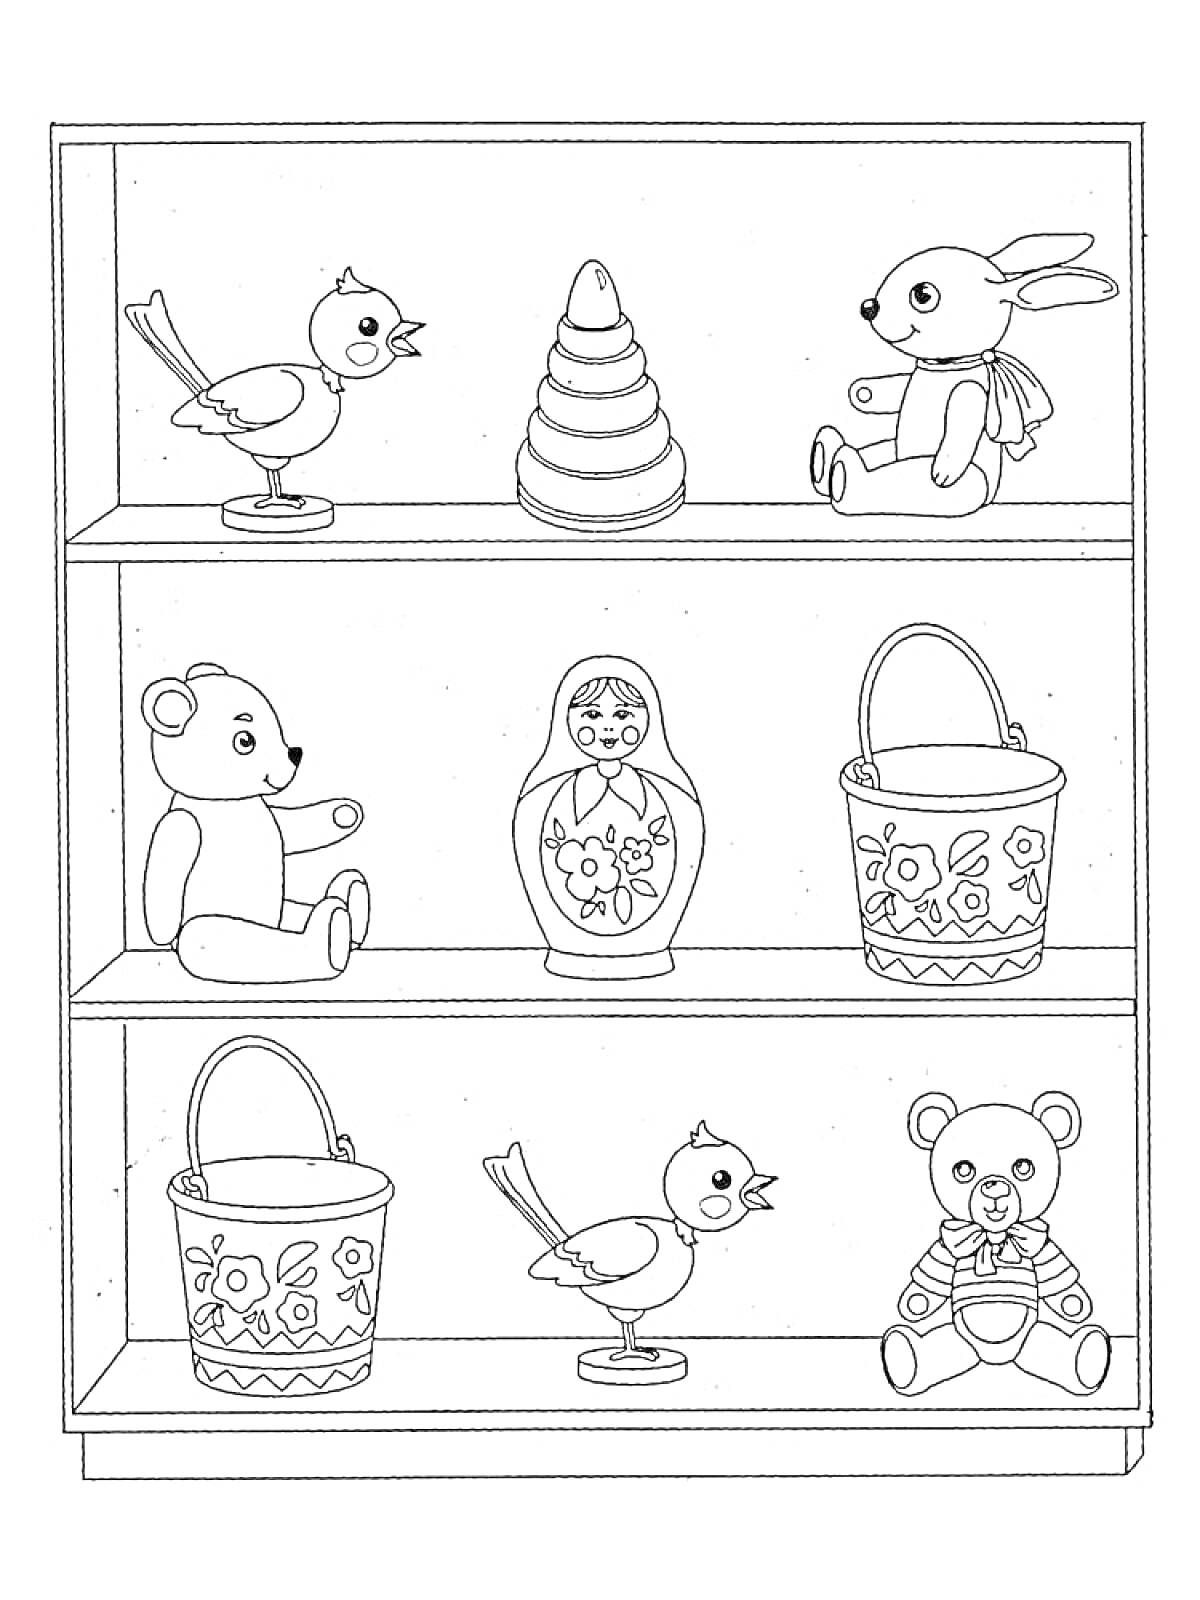 Полка в магазине игрушек с двумя птичками, пирамидкой, зайцем, двумя медведями, матрешкой и двумя ведёрками